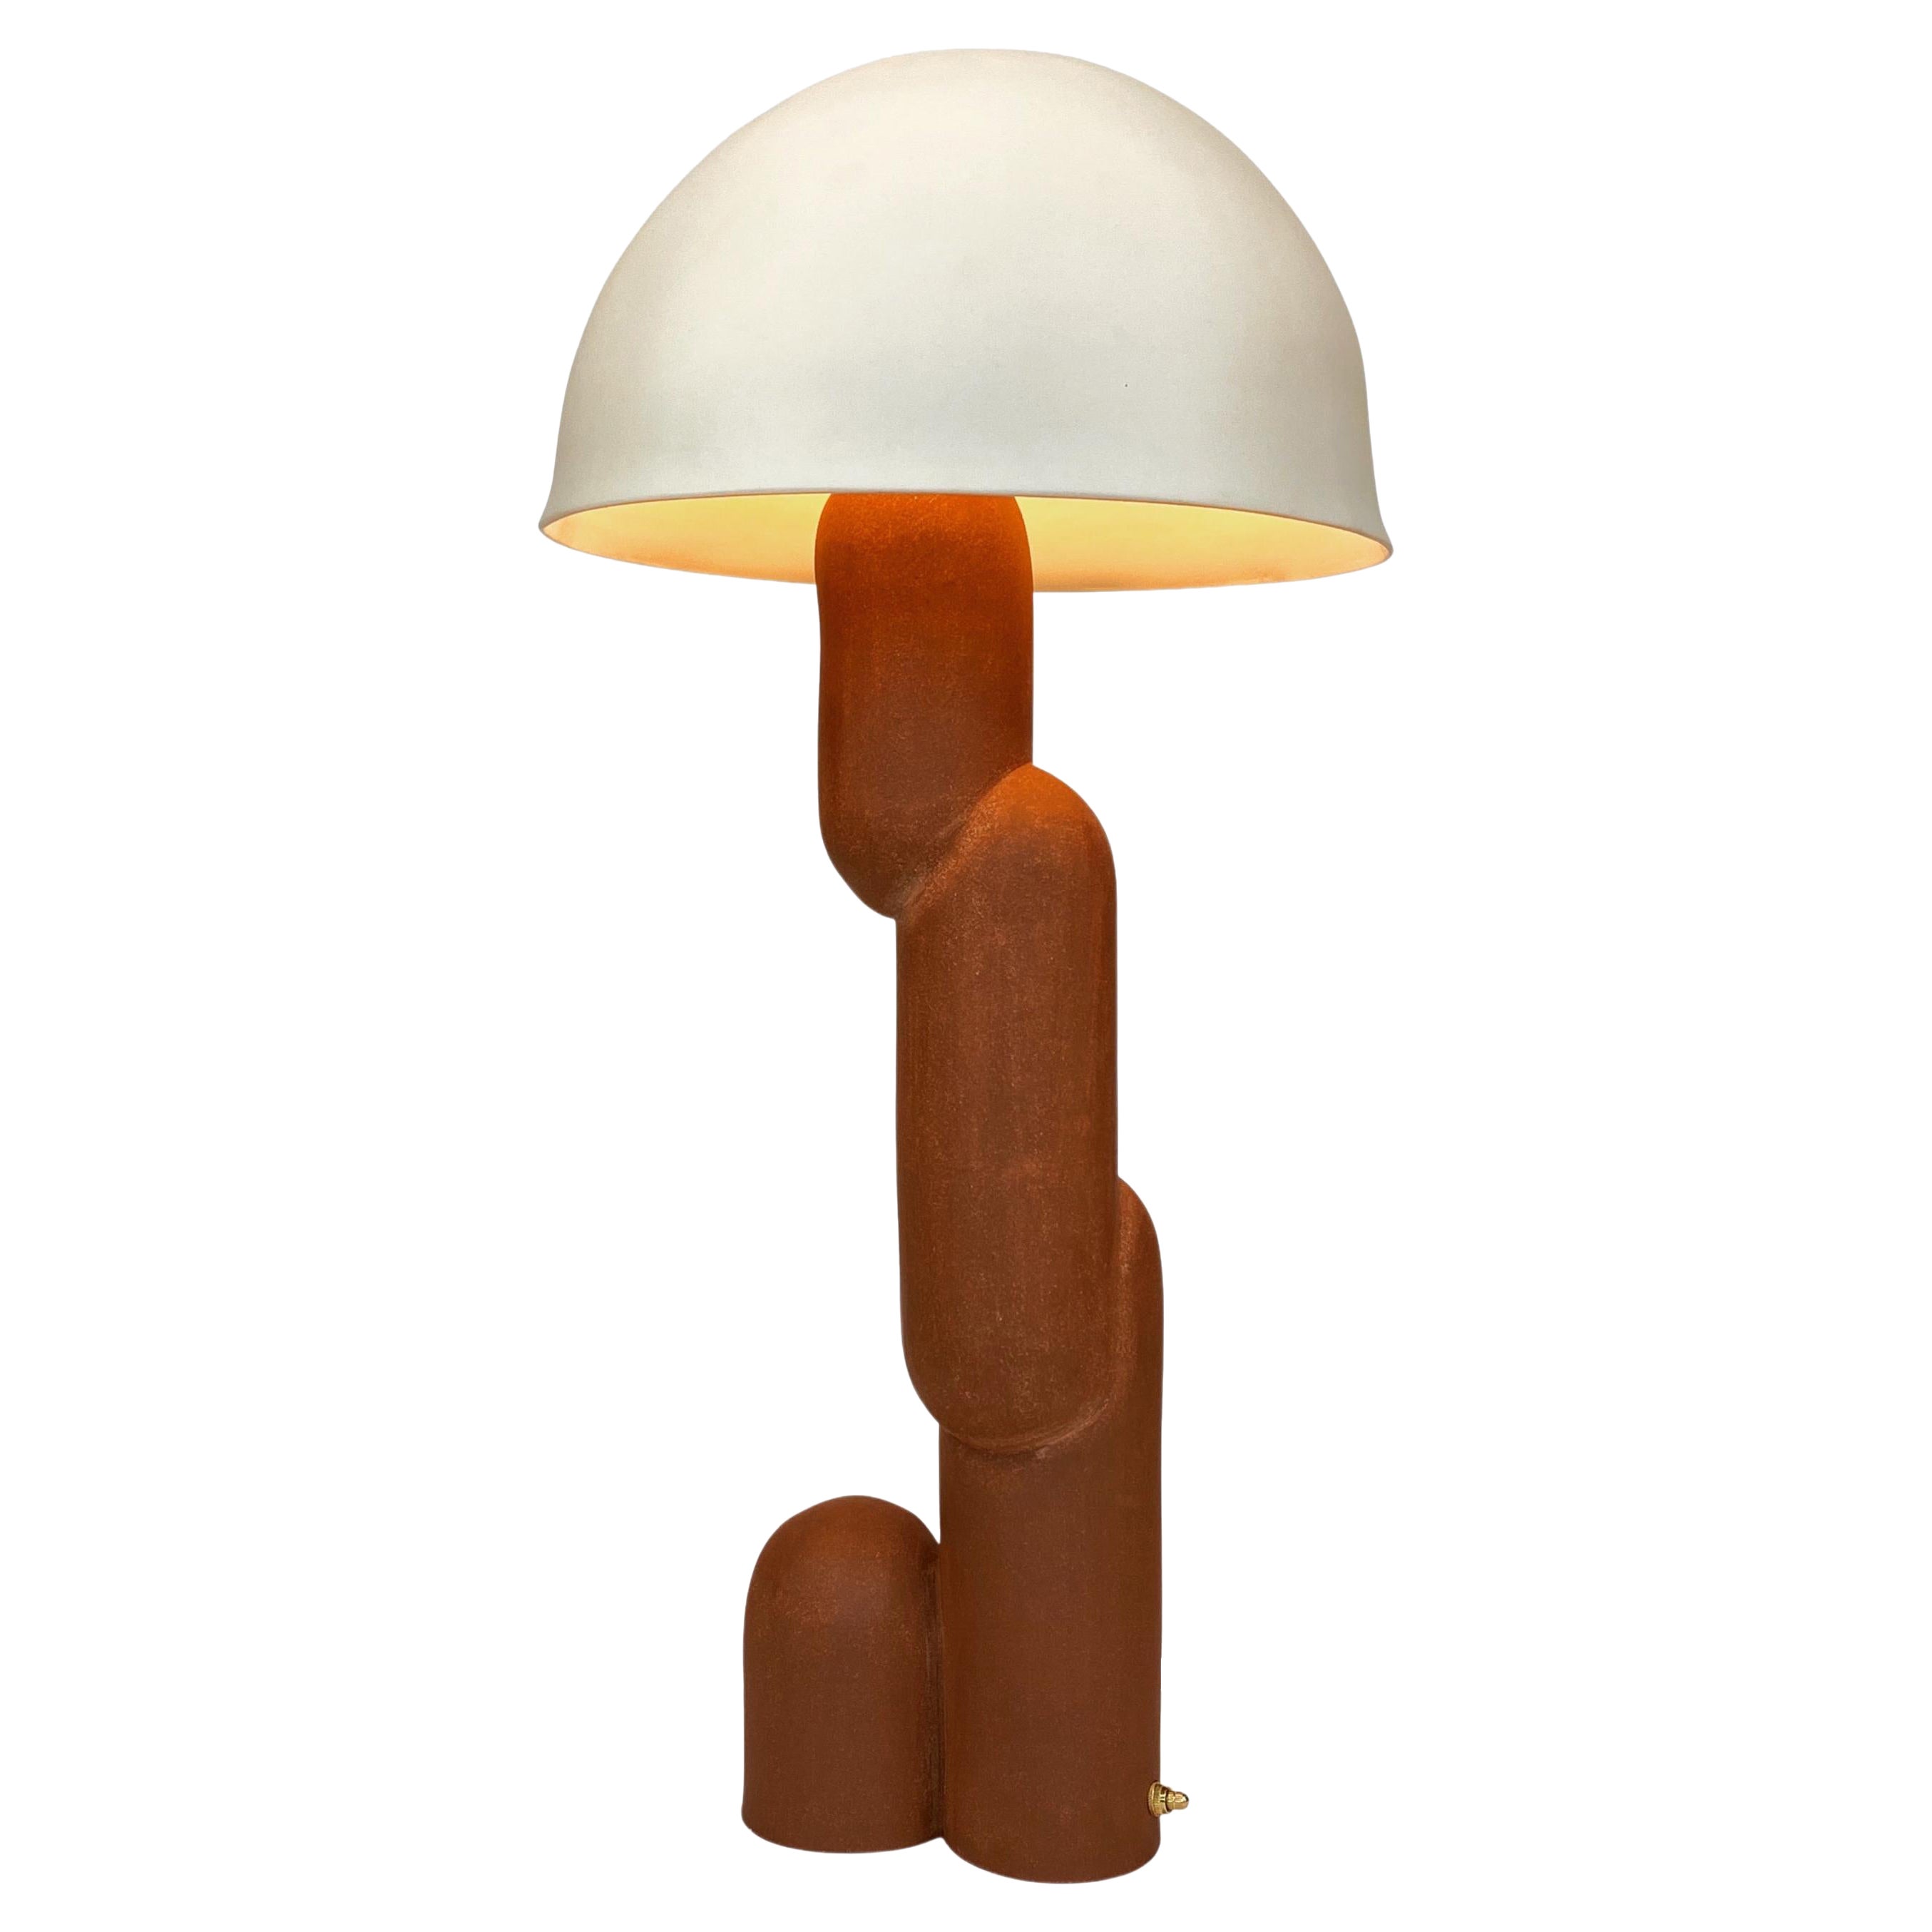 Torpedo 4.0 Lamp by Sunshine Thacker